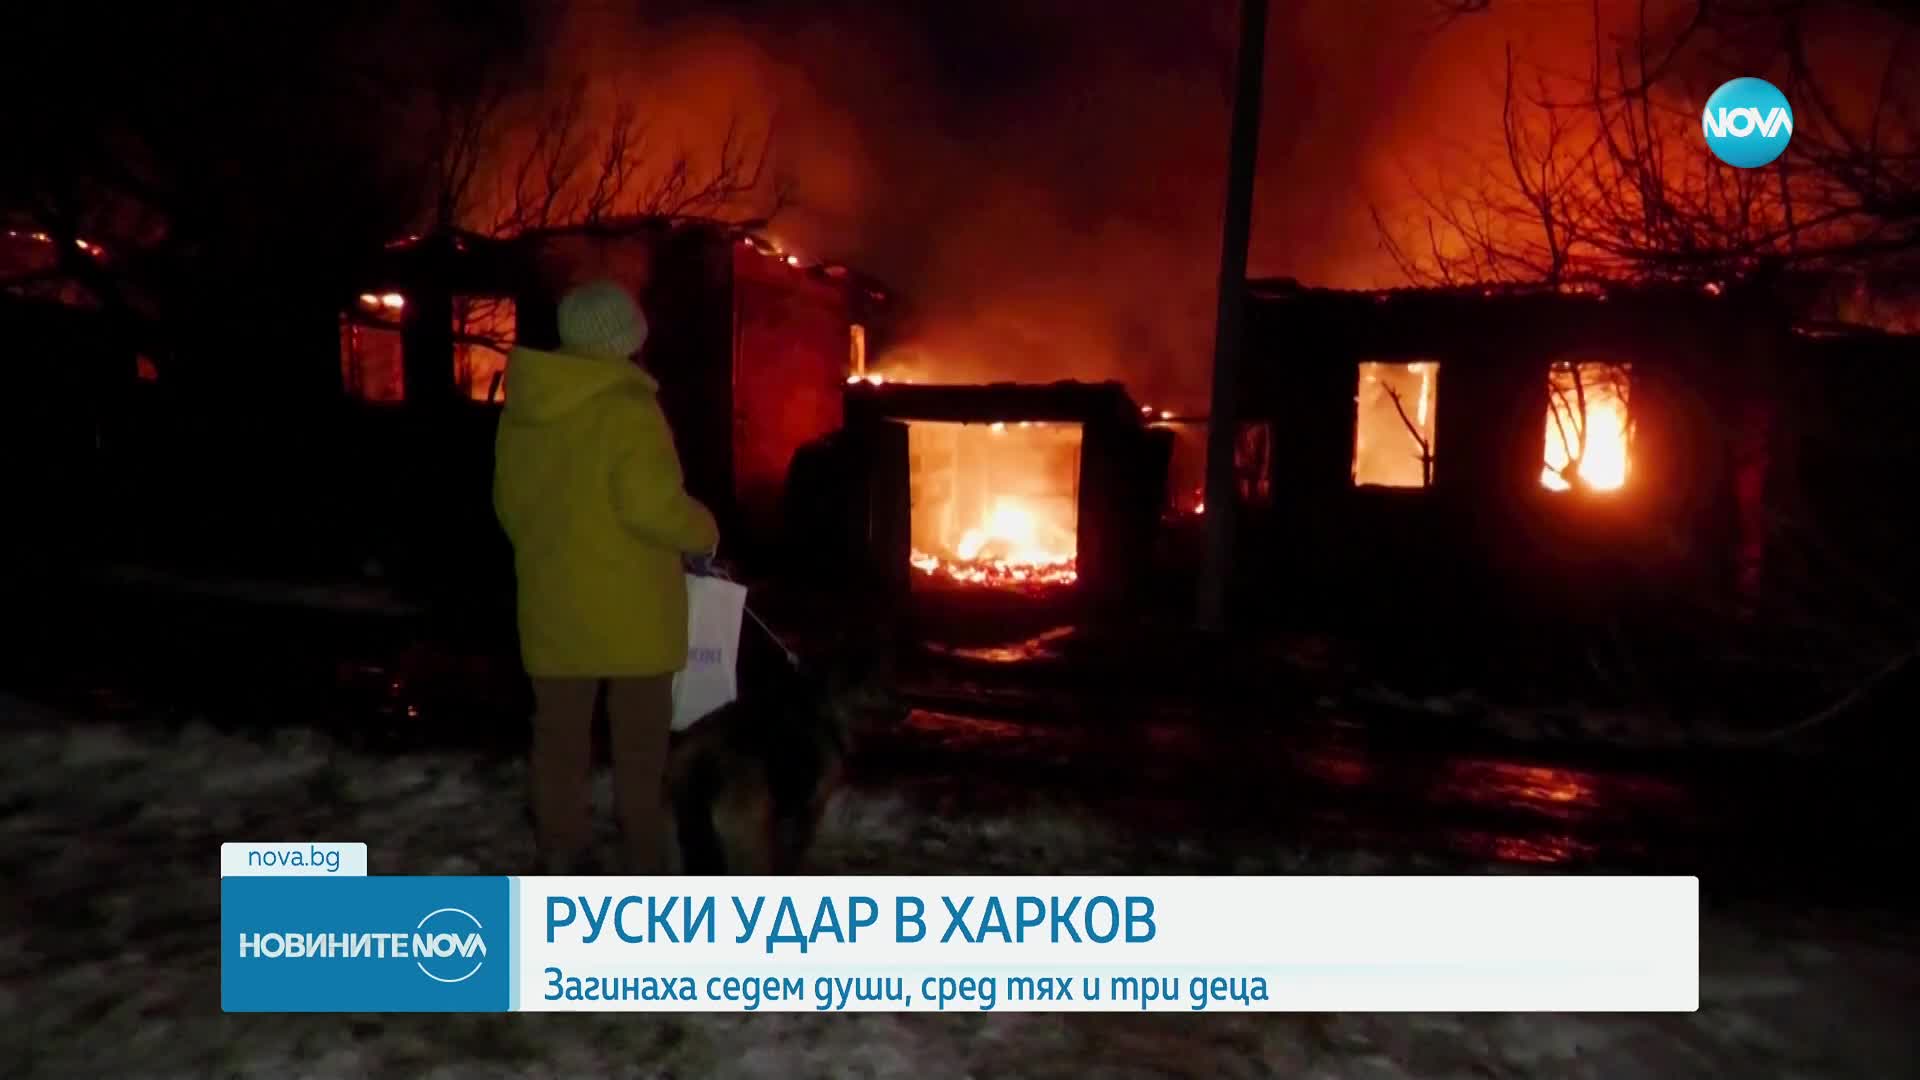 Украинска прокурорка, съпругът ѝ и трите им деца загинаха при взрив в Харков